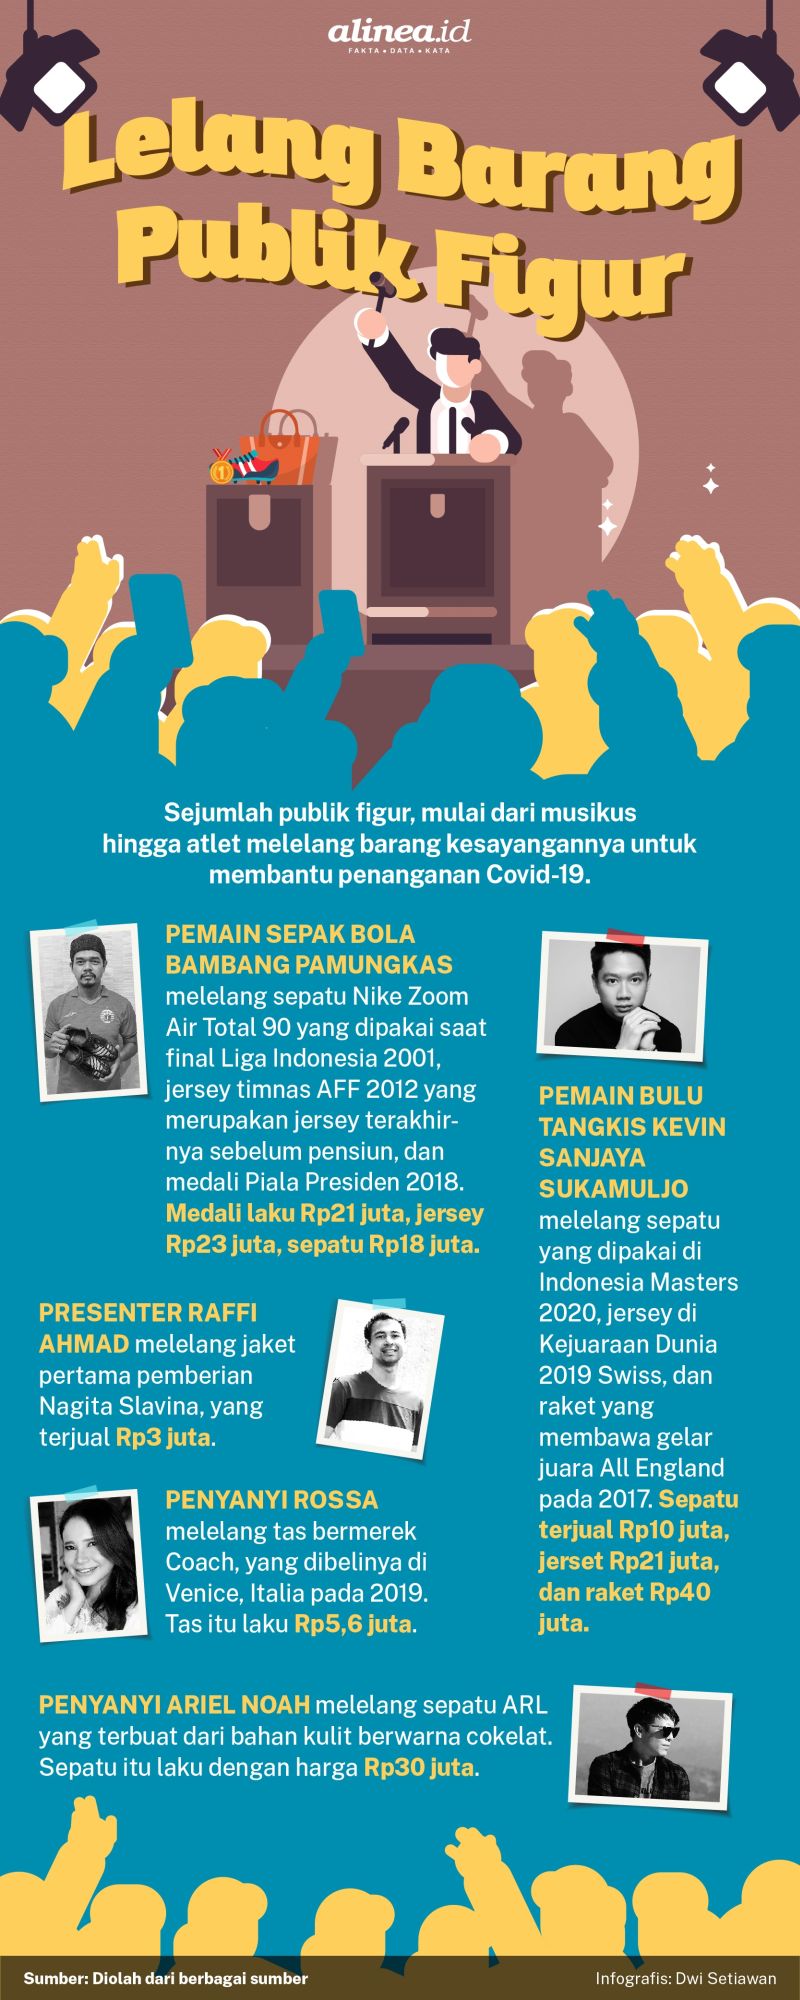 Infografik lelang barang untuk Covid-19. Alinea.id/Dwi Setiawan.